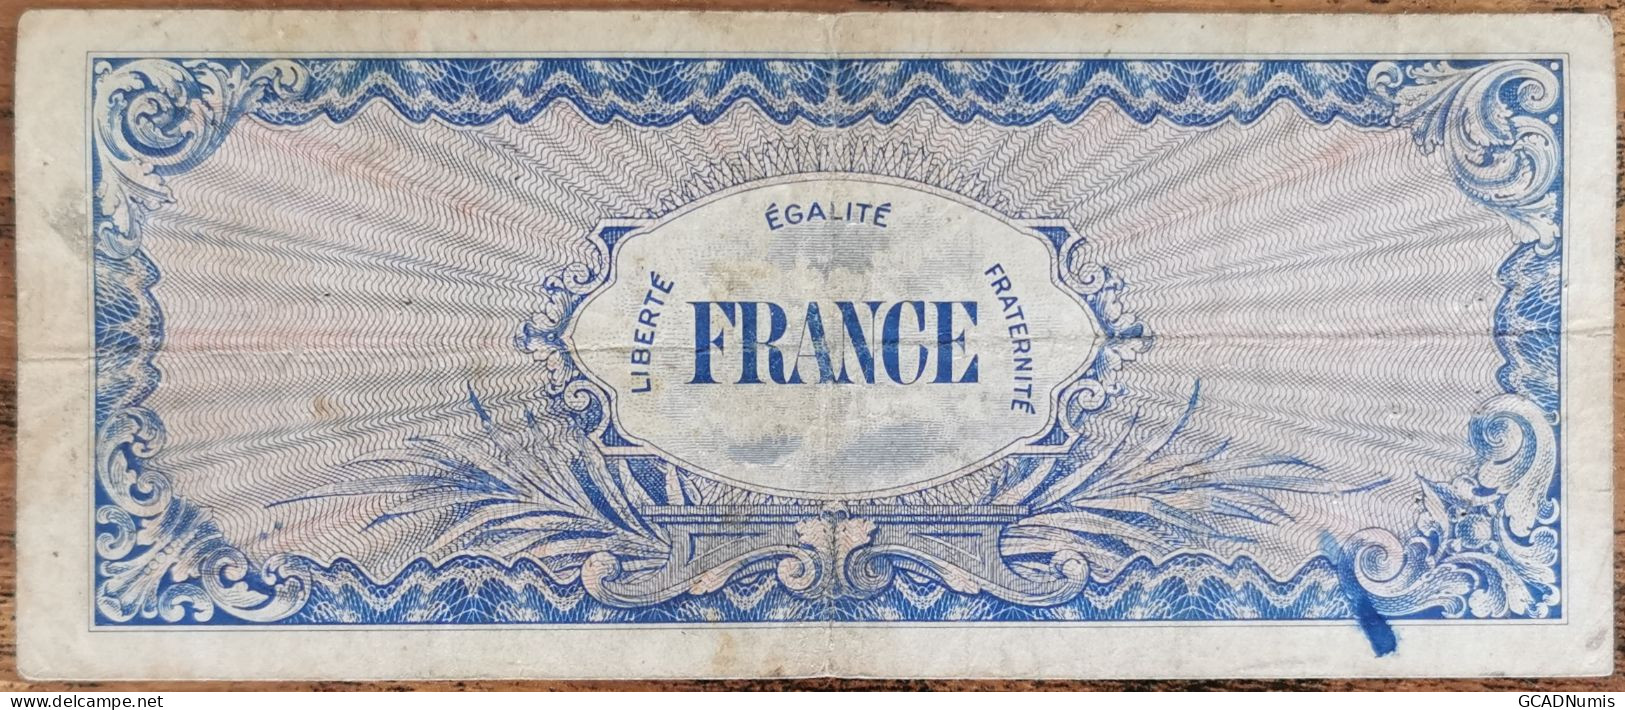 Billet 100 Francs 1944 FRANCE Préparer Par Les USA Pour La Libération Série 7 - 1944 Flag/France